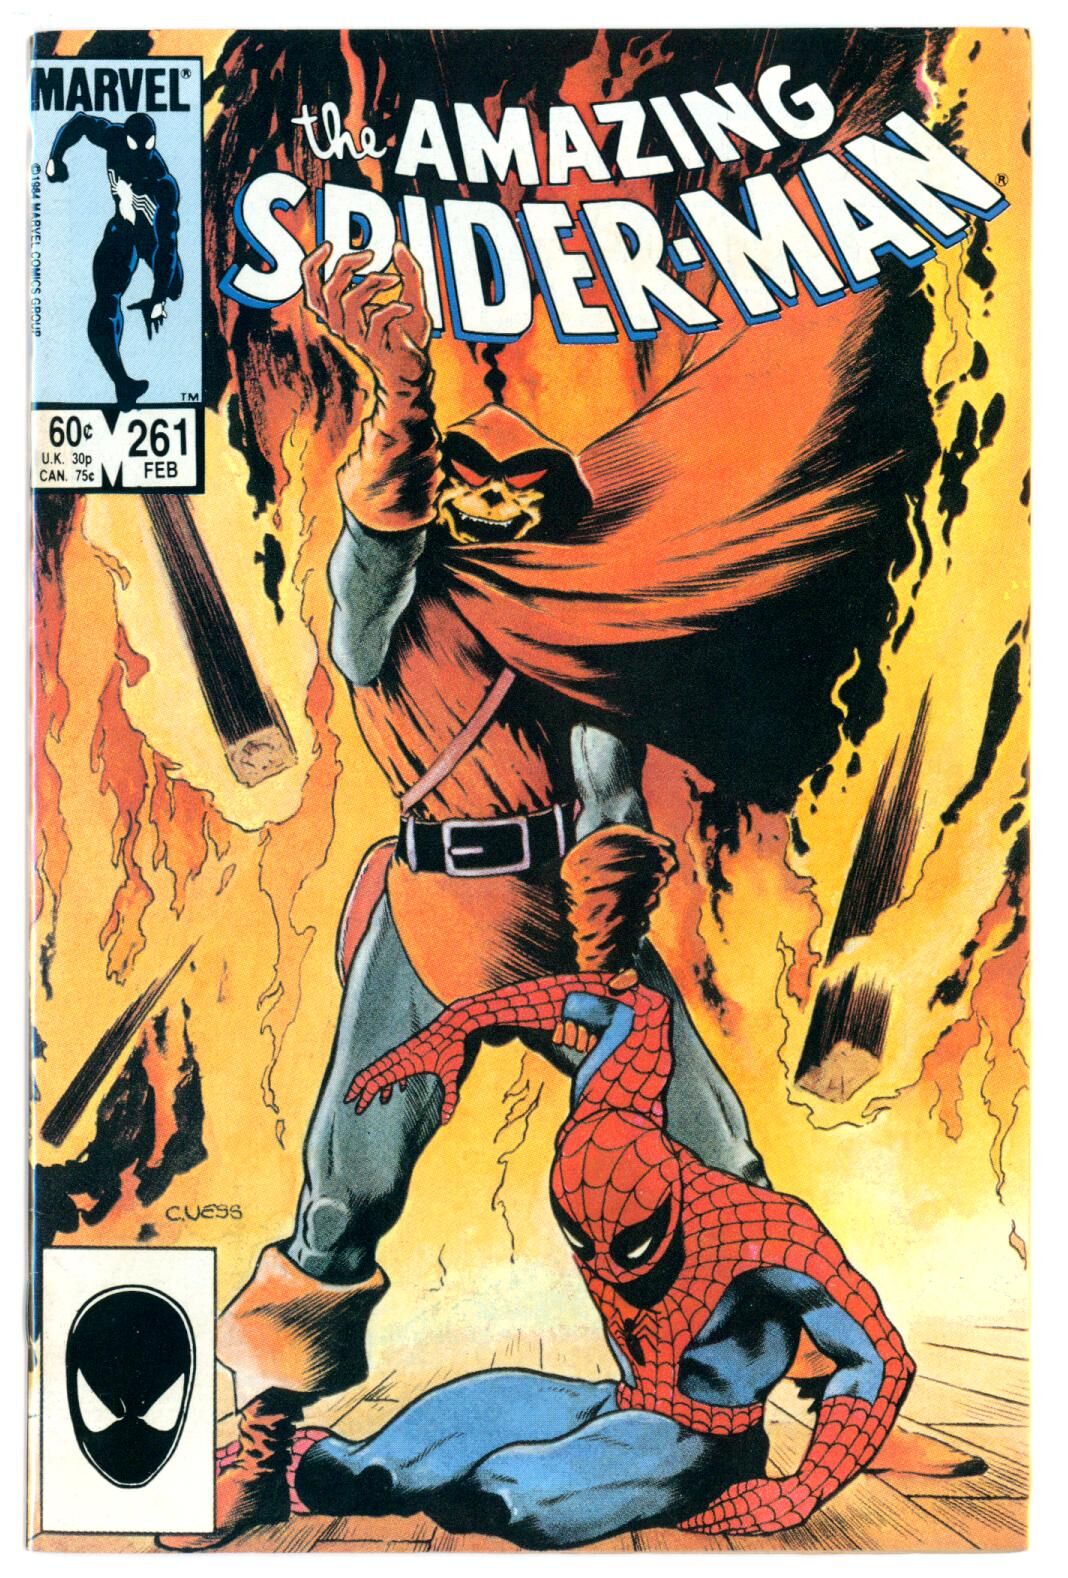 Amazing Spider-Man #261